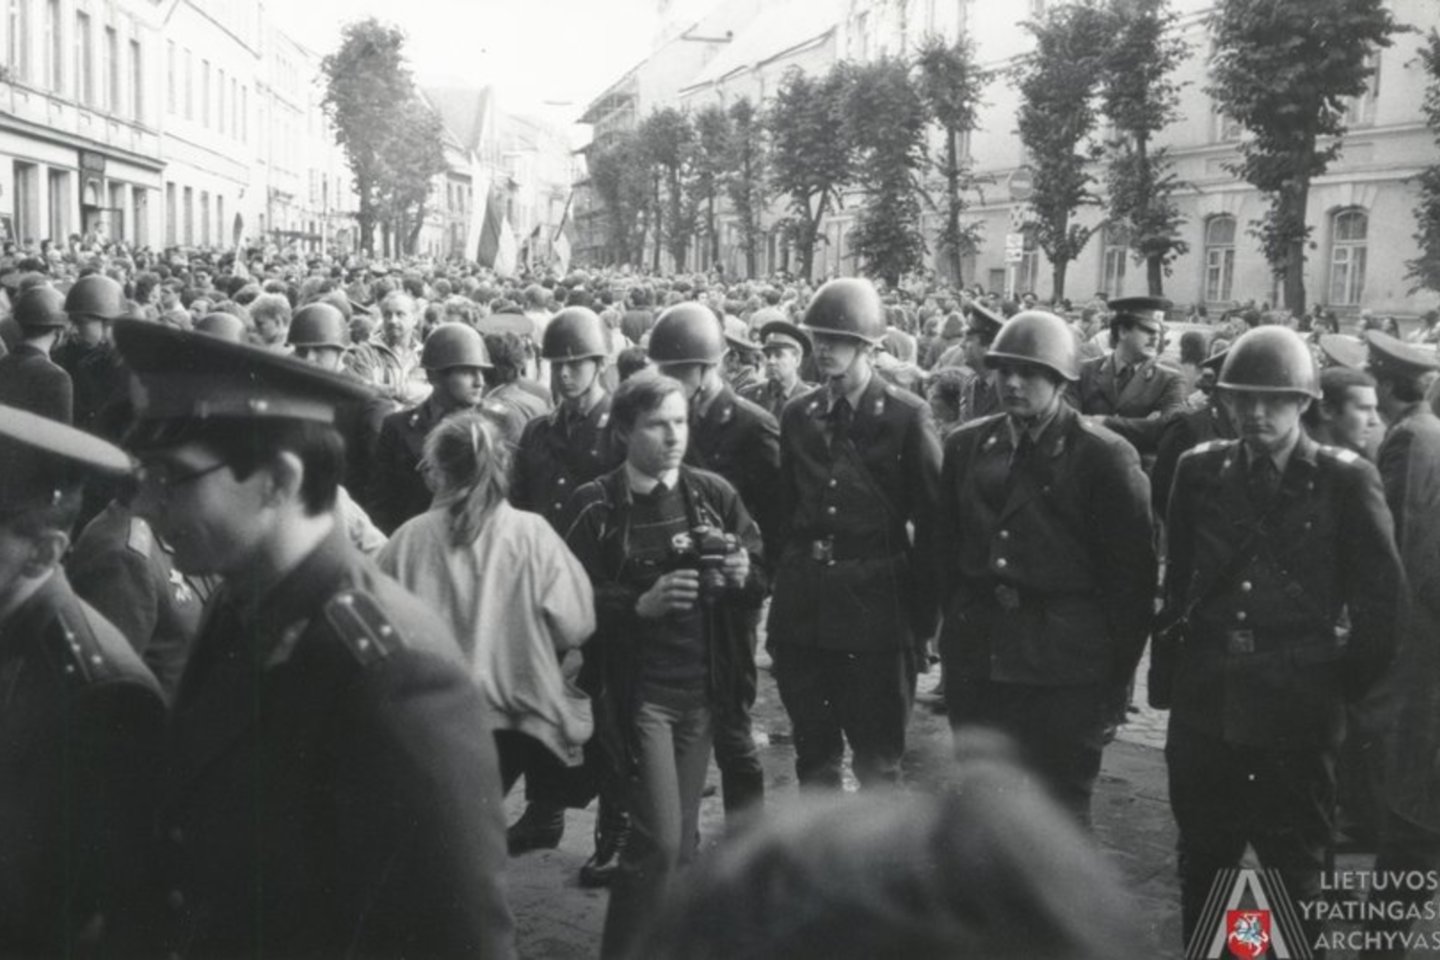 LLL mitingas, skirtas pasmerkti 1939 m. rugsėjo 28 d. pasirašyto Molotovo-Ribentropo pakto slaptųjų protokolų pasekmes. Vilnius, Gedimino (dabar – Katedros) aikštė. 1988 m. rugsėjo 28 d. Malšinti mitingą buvo pasiųsti milicijos ir SSRS vidaus kariuomenės specialieji daliniai, kurie apsupo protestuotojus ir pradėjo juos mušti guminėmis lazdomis (vad. „bananais“). Protesto mitingo malšinimo akcijai prigijo pavadinimas „bananų balius“. Tai buvo paskutinis kartas sovietinės Lietuvos istorijoje kai prieš mitingo dalyvius buvo panaudota jėga.<br>Lietuvos ypatingasis archyvas.